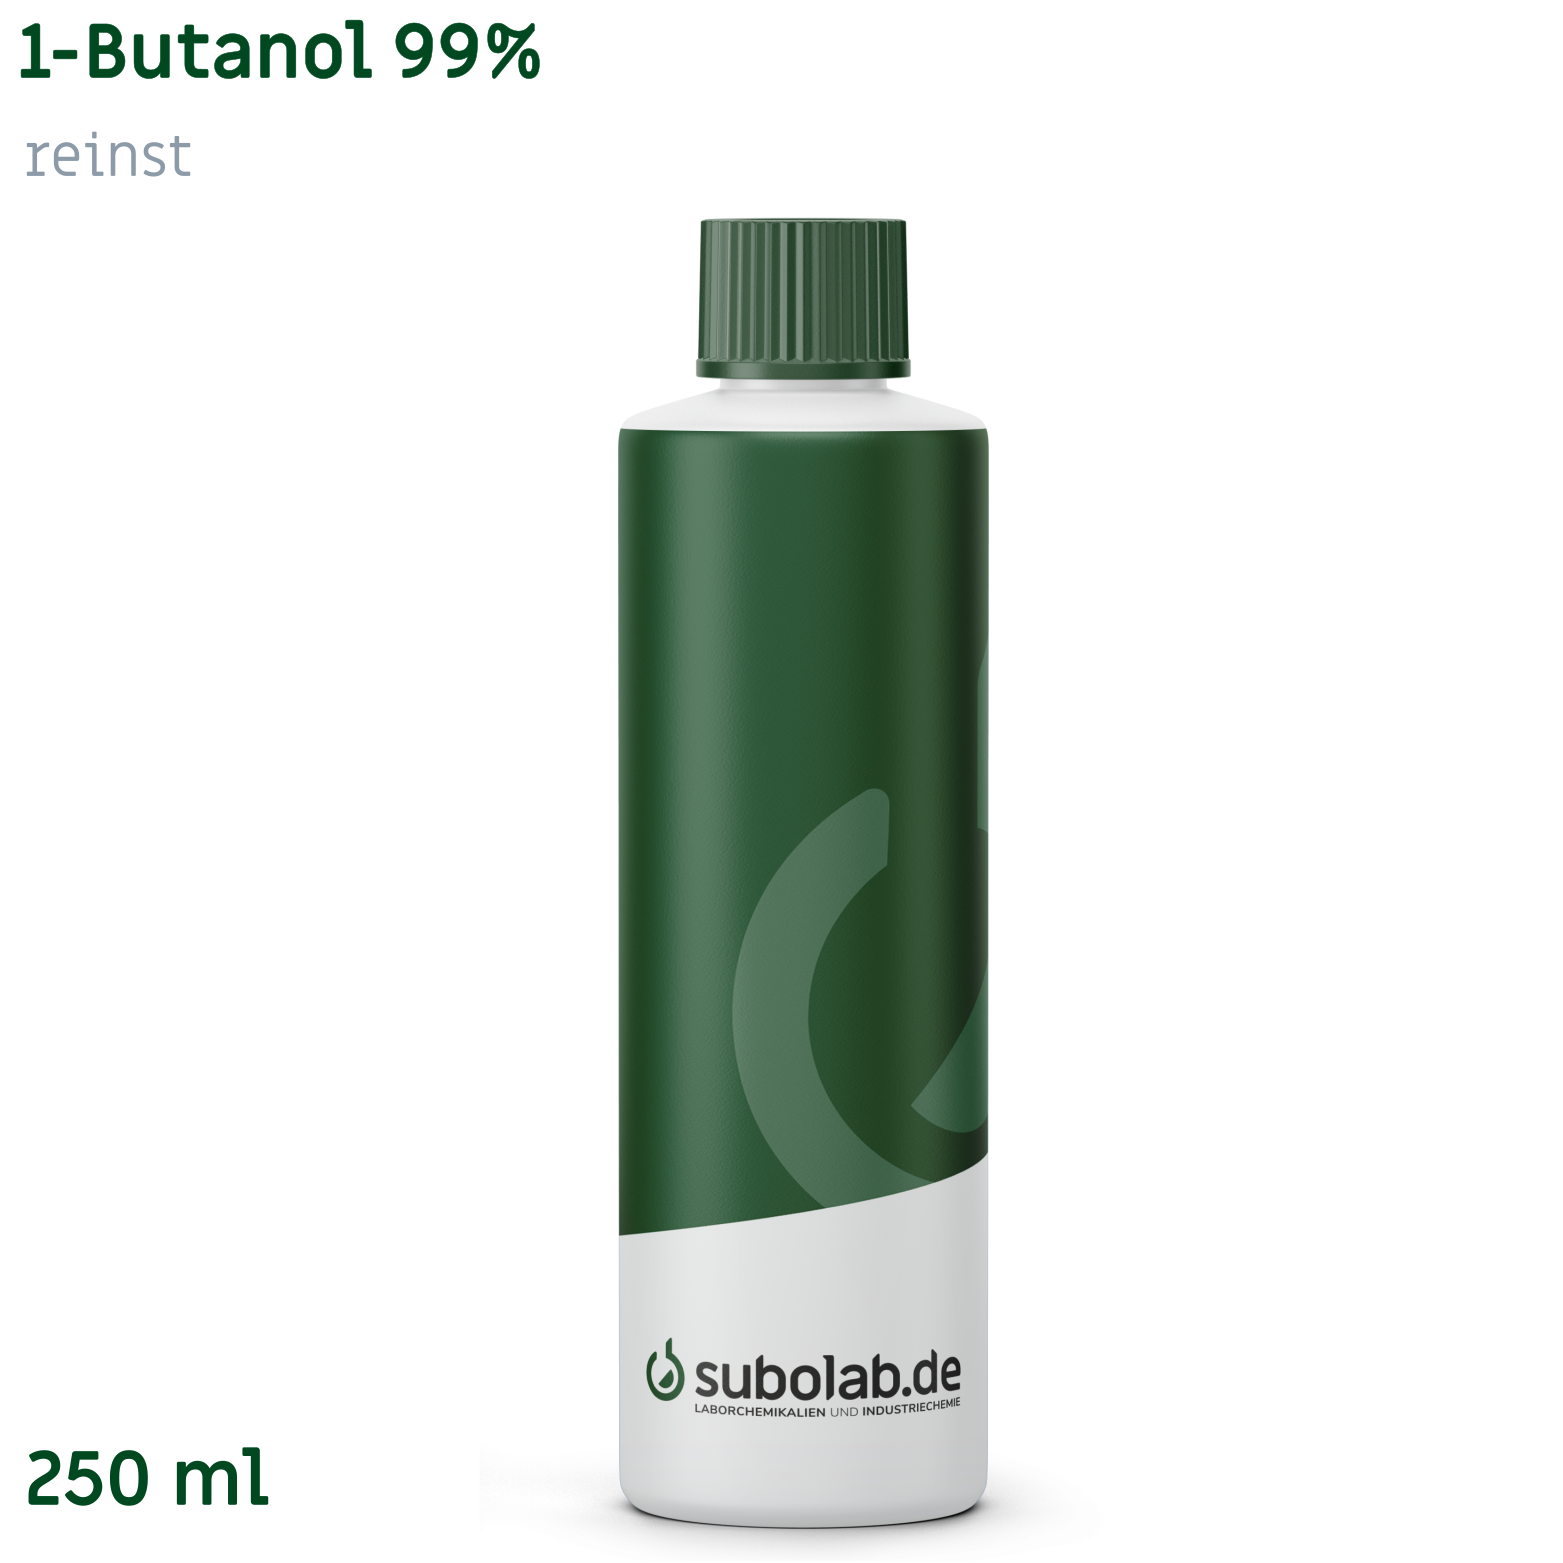 Bild von 1-Butanol 99% reinst (250 ml)